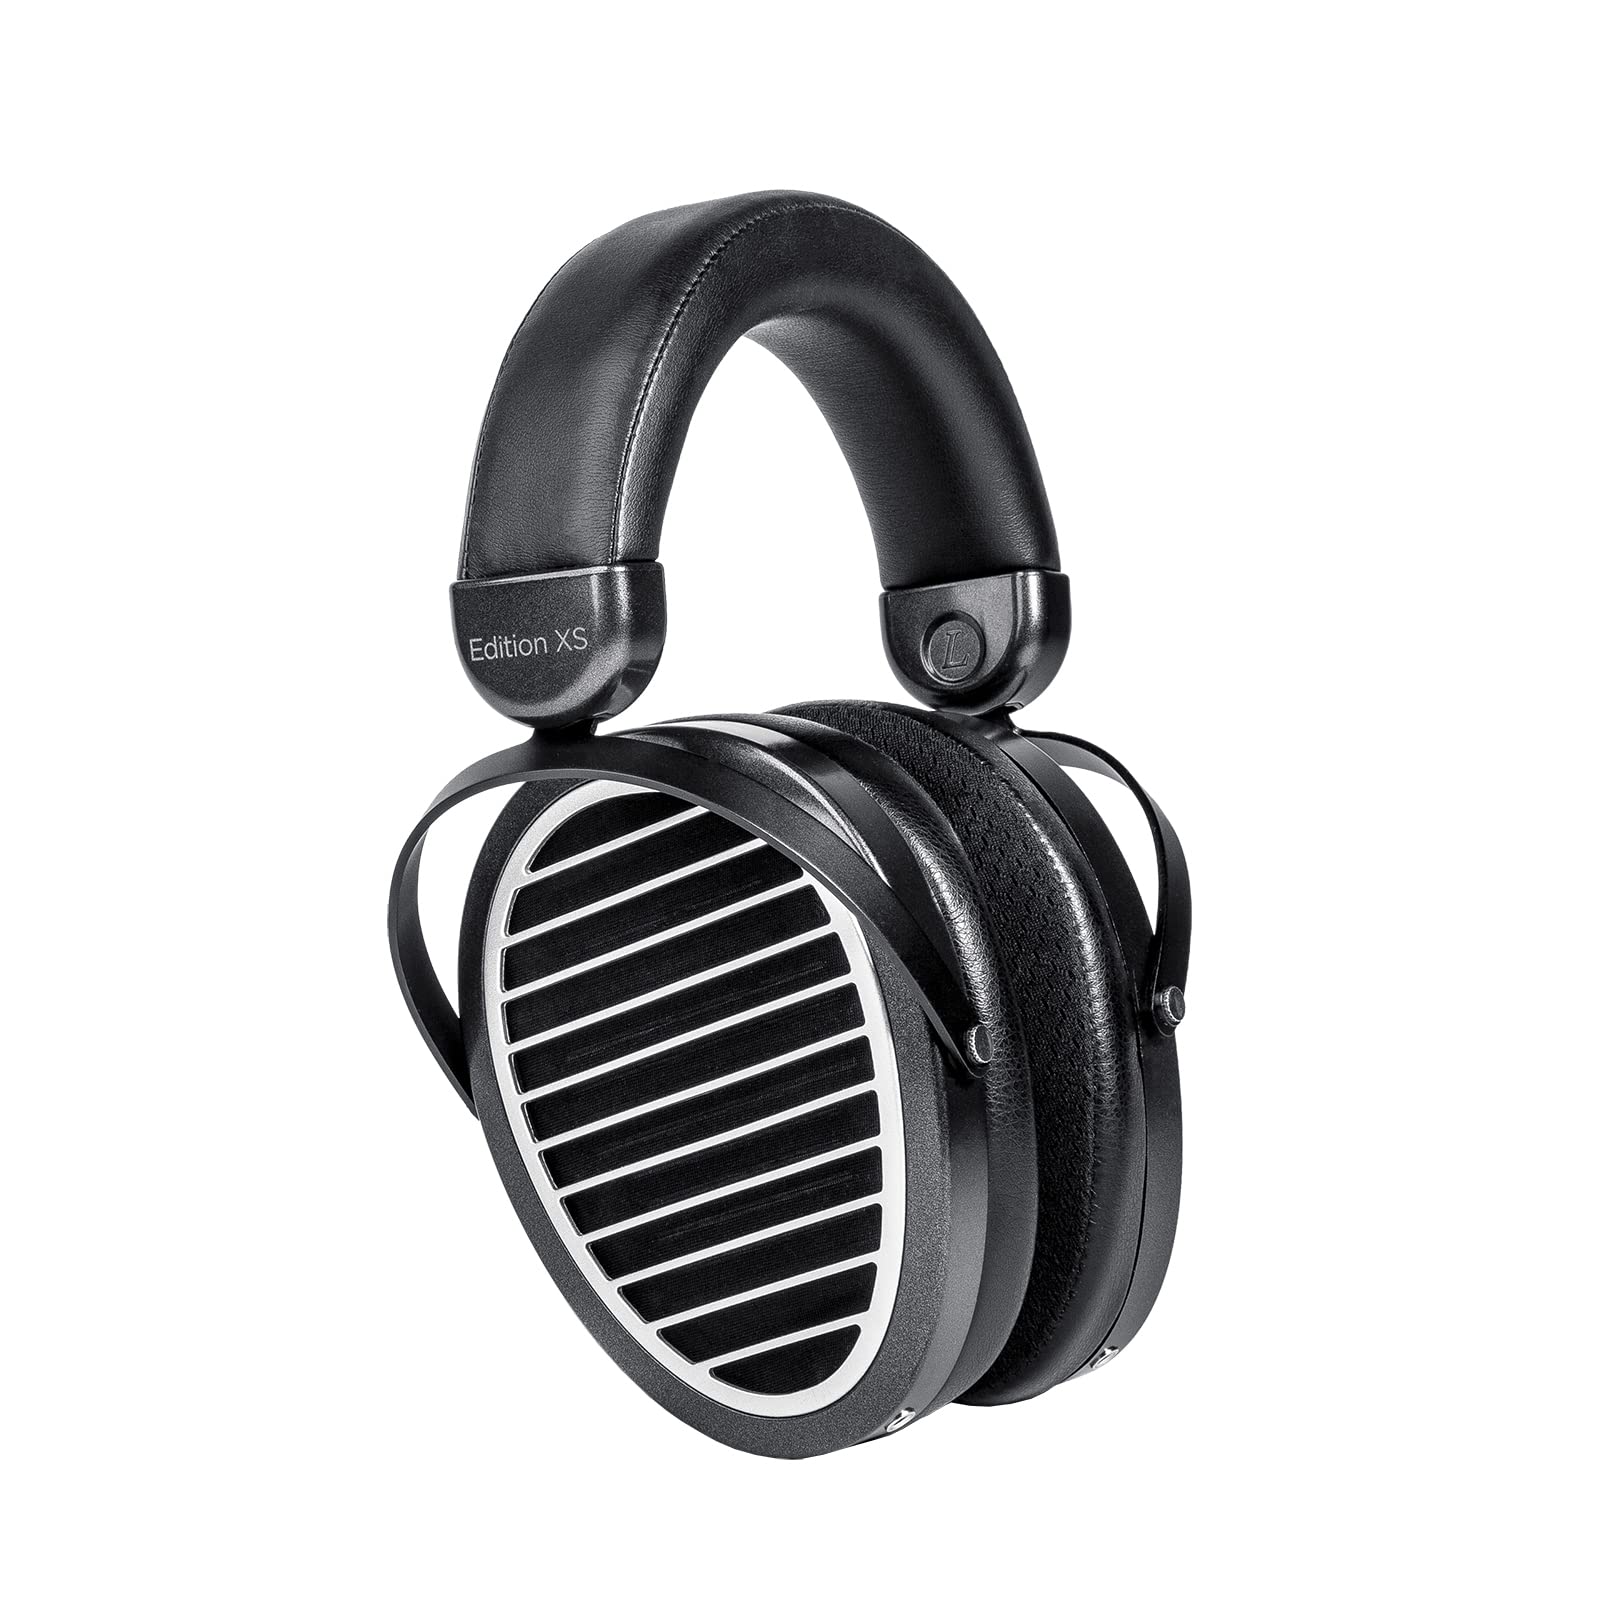 HIFIMAN XS 版全尺寸包耳式开放式平面磁性高保真耳机，带隐形磁铁设计、可调节头带、可拆卸线缆，适合发烧...